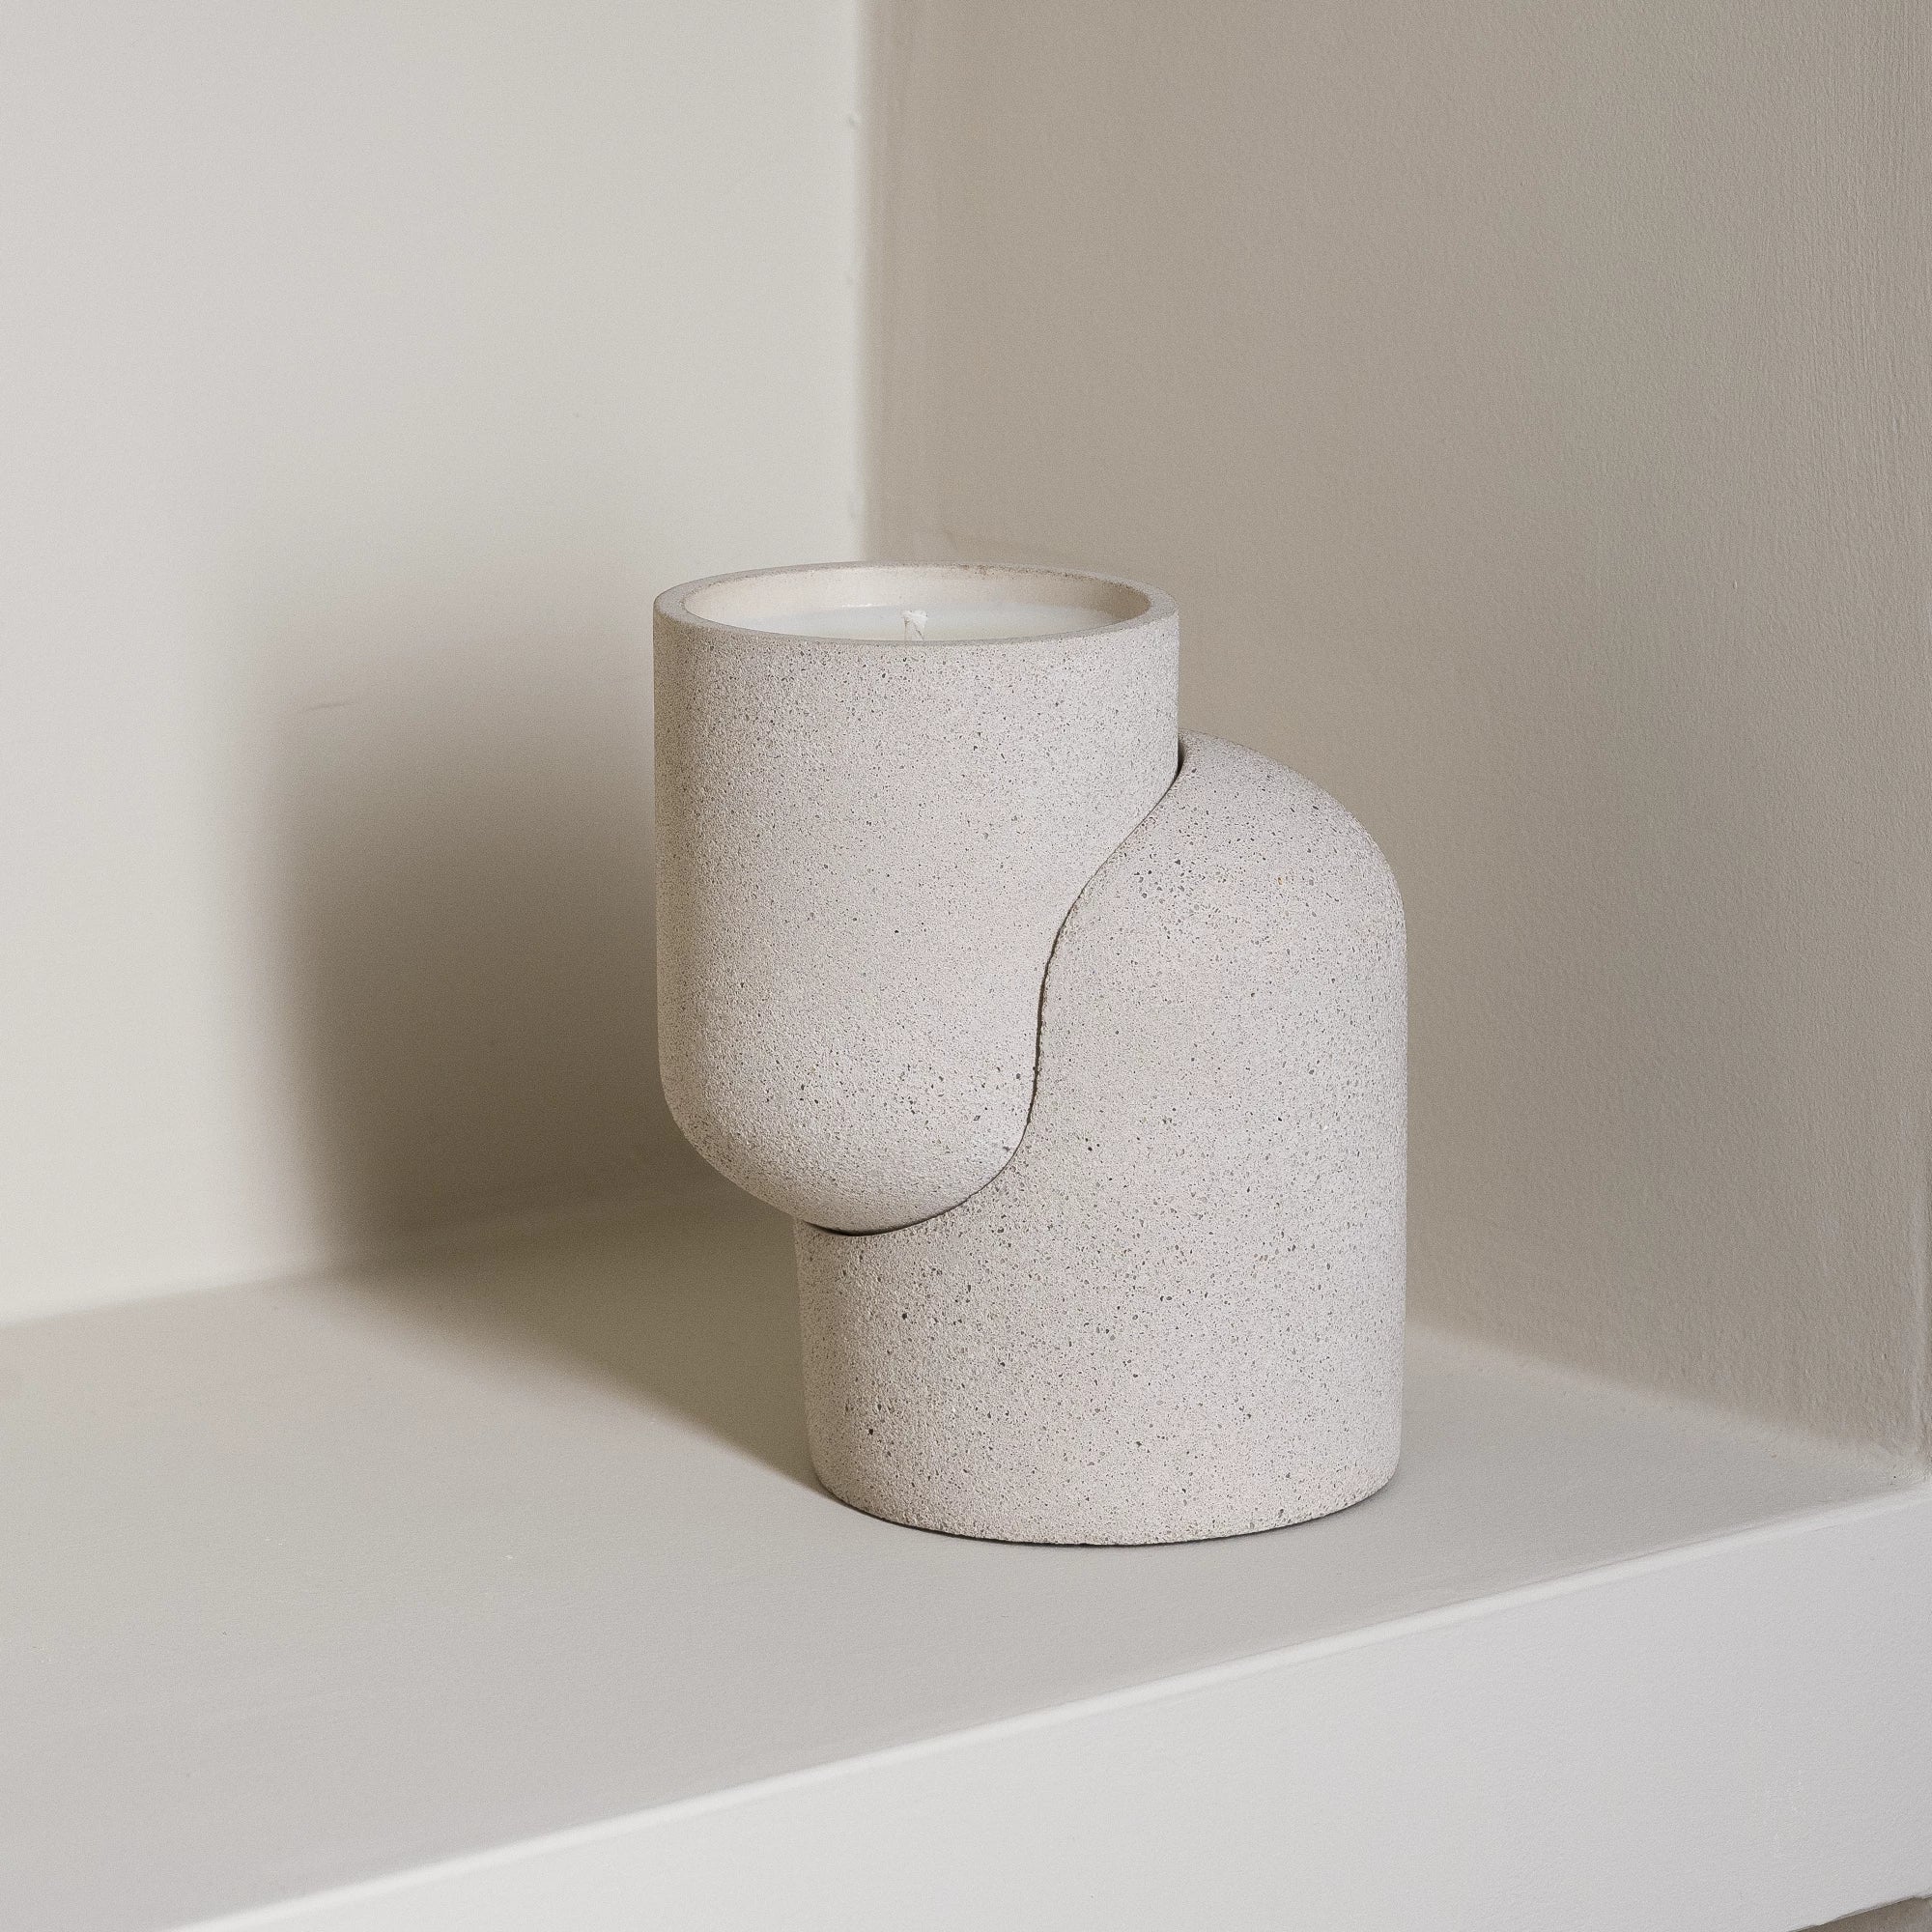 Concrete And Colour Candle Pots By TheLittleBoysRoom Velas de soja, Arte  con cemento, Manualidades en cemento, Candle Pot